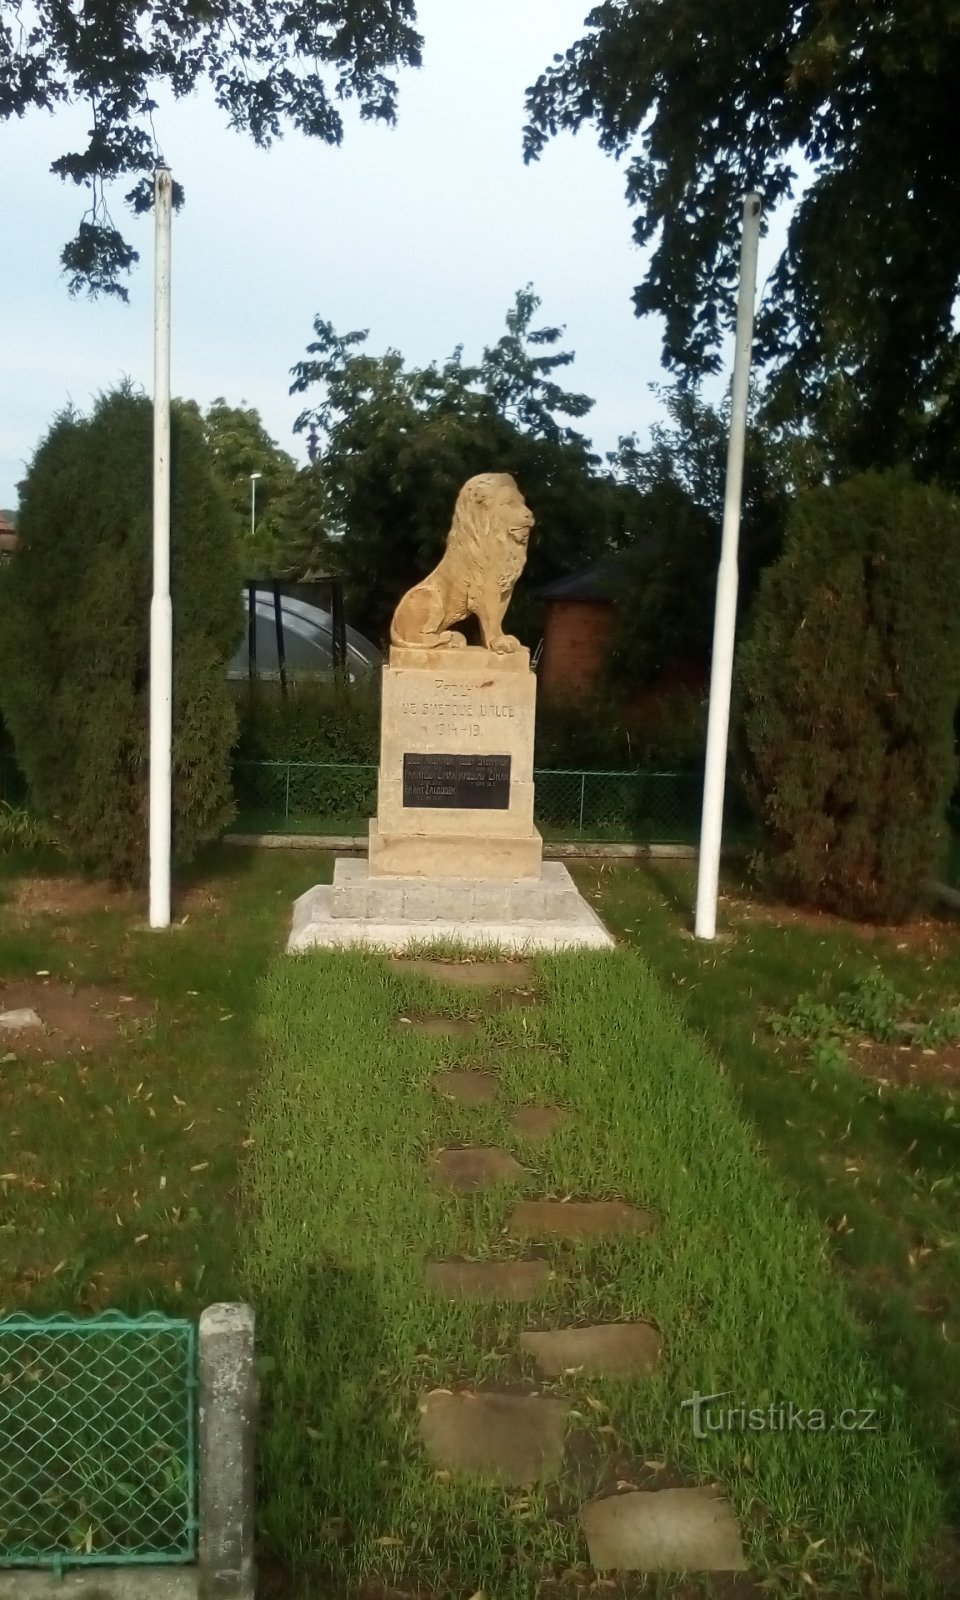 Đài tưởng niệm những người đã ngã xuống ở Němčice